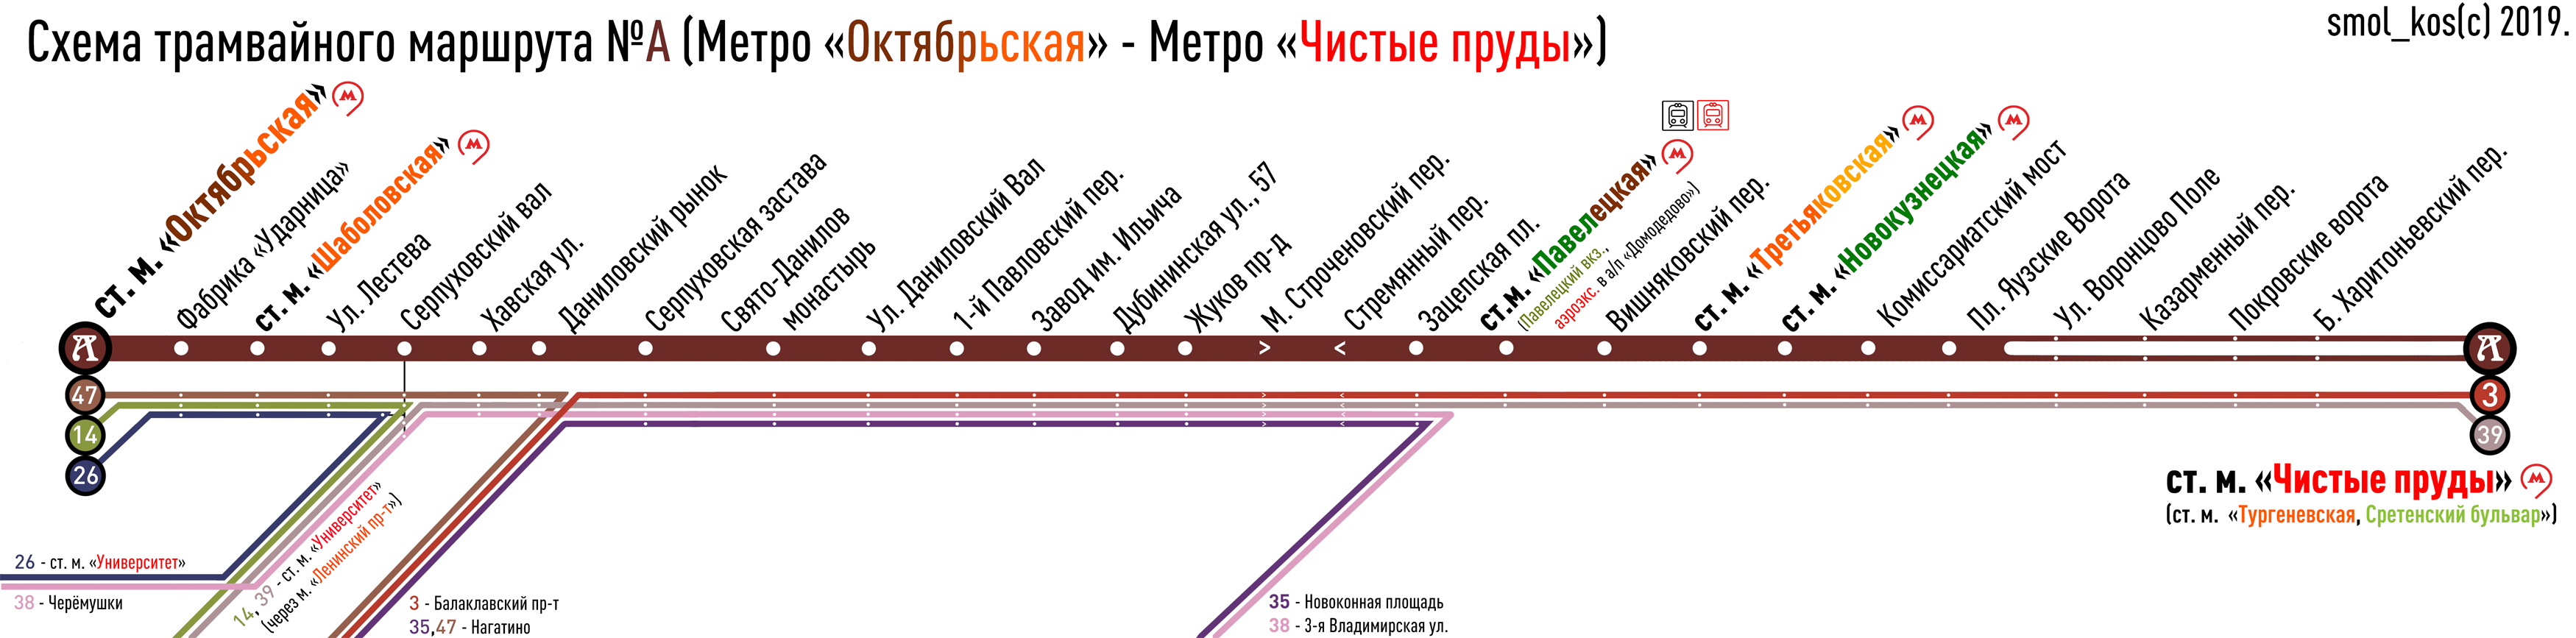 Москва — Схемы отдельных маршрутов